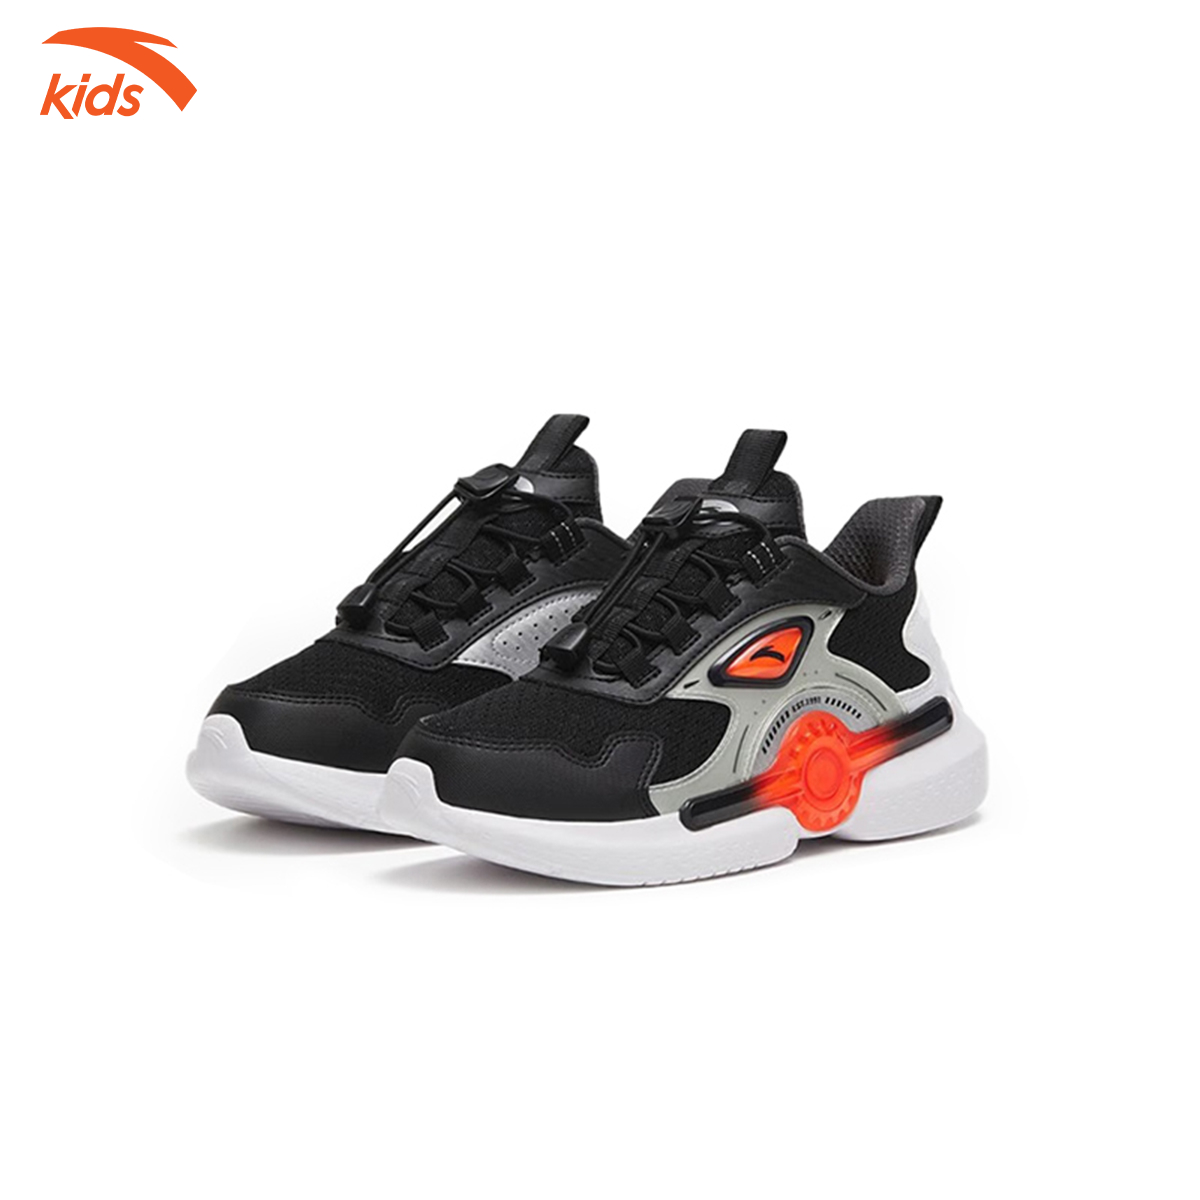 Giày thời trang thể thao bé trai Anta Kids, giày nhẹ, chống trơn trượt 312318807-1